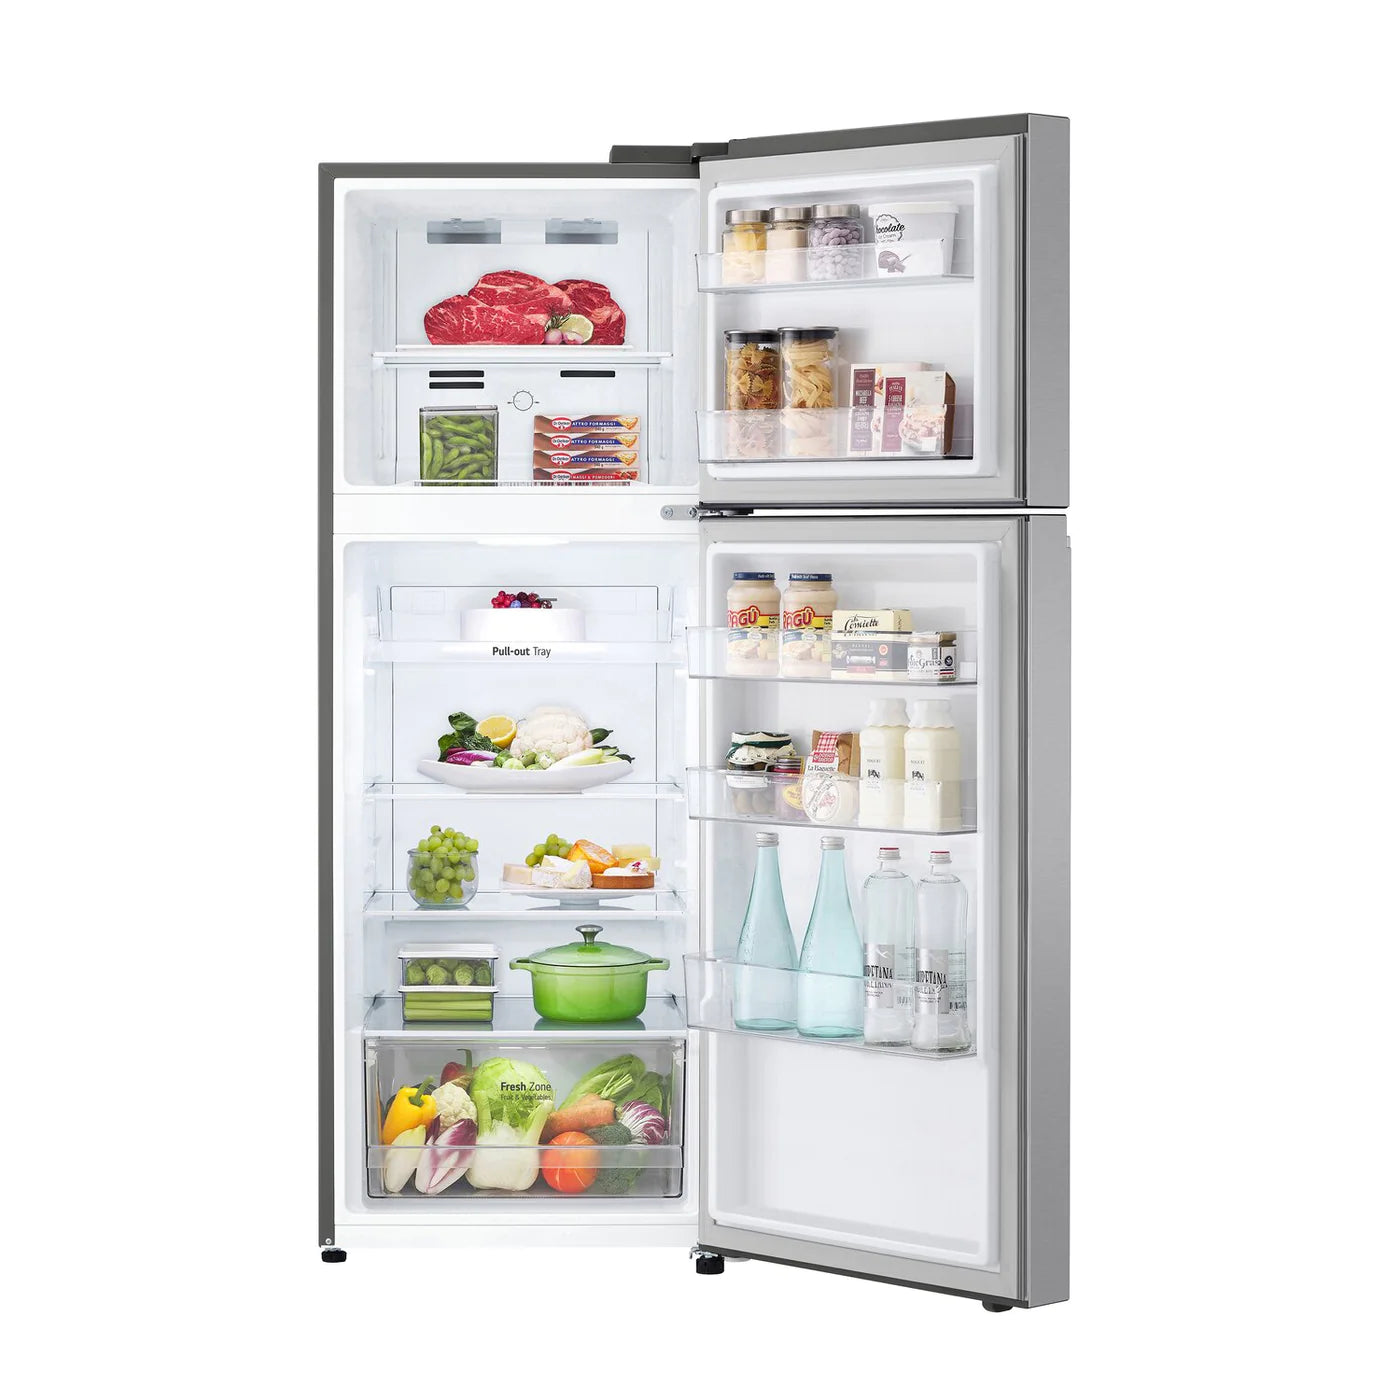 LG Refrigerator 24" Stainless Steel LT11C2000V